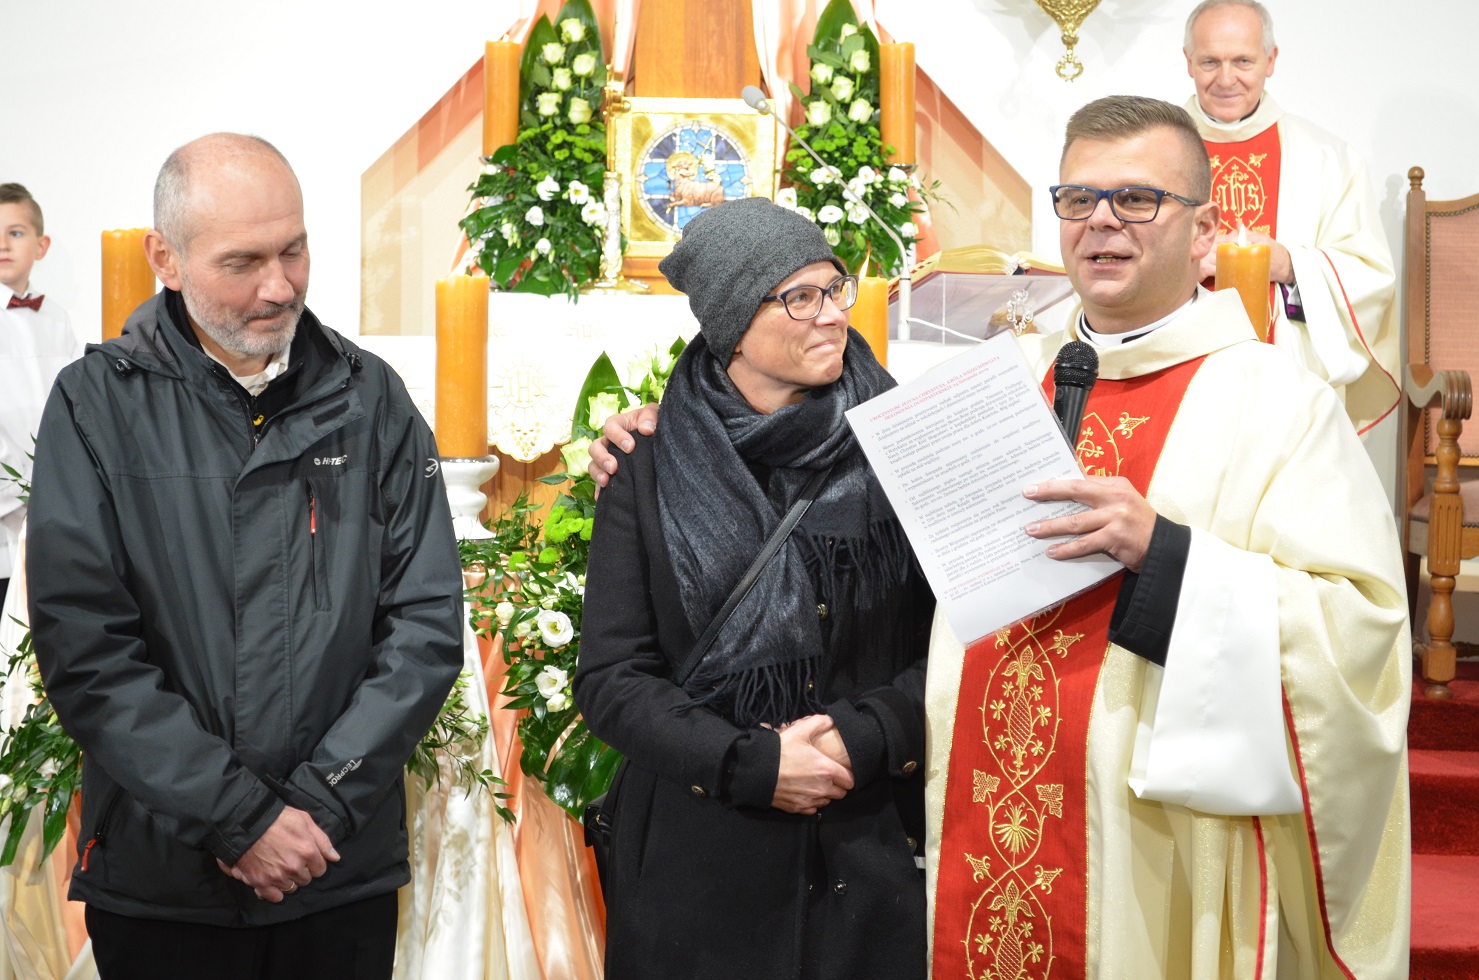 Ks. proboszcz Konrad Świstak wraz z architektami kościoła: Anną Niemczyk-Wojtecką i Robertem Wojteckim.